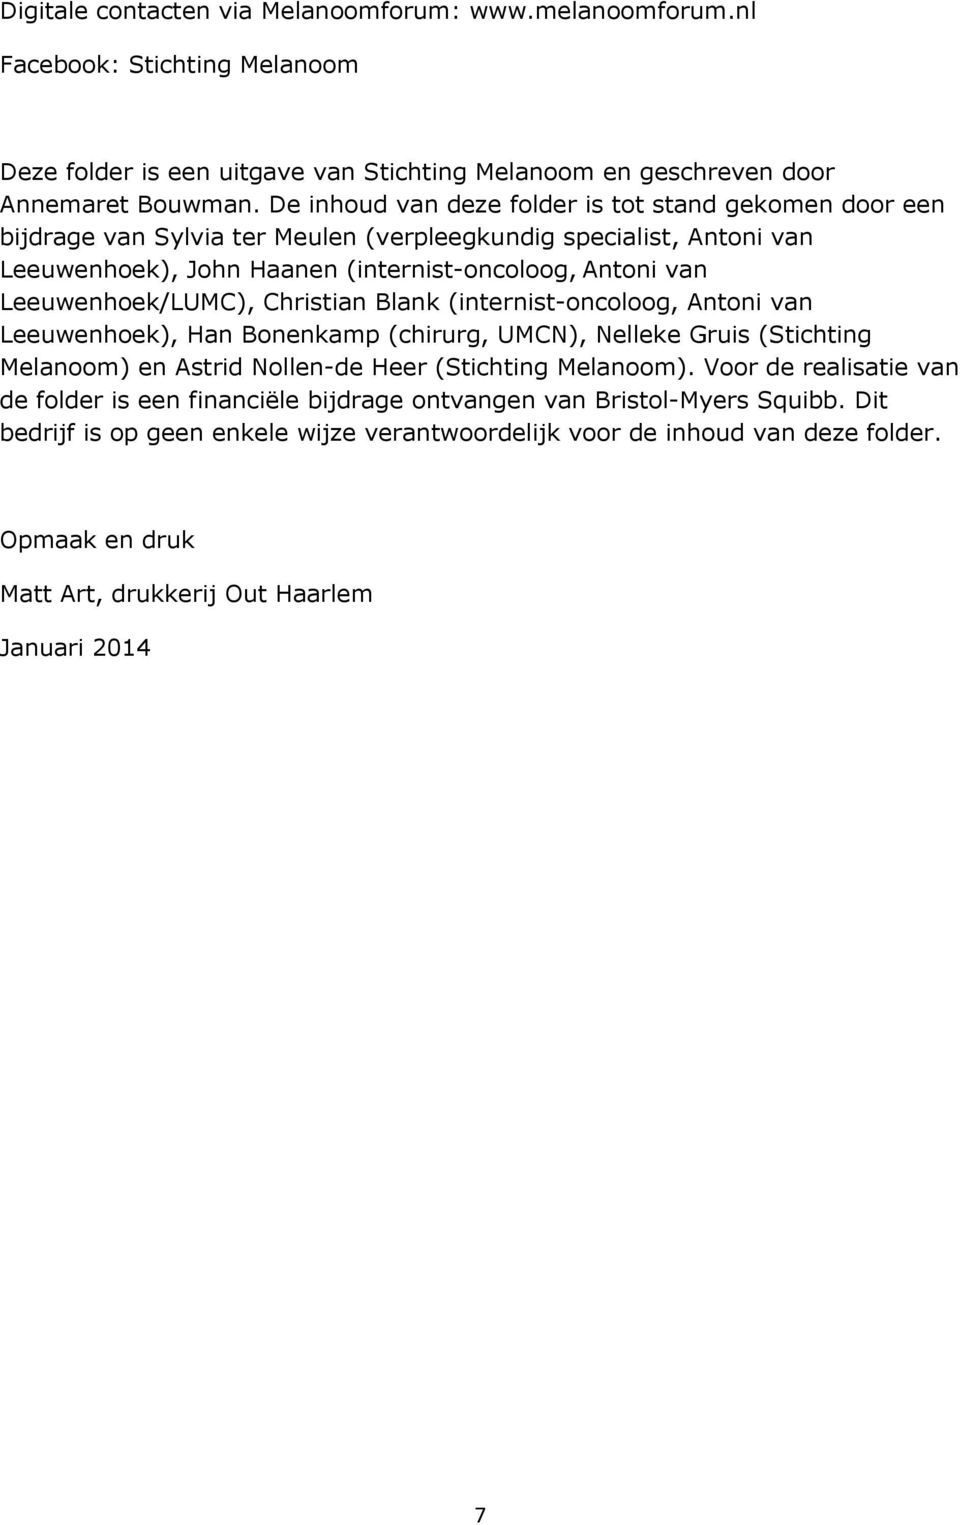 Leeuwenhoek/LUMC), Christian Blank (internist-oncoloog, Antoni van Leeuwenhoek), Han Bonenkamp (chirurg, UMCN), Nelleke Gruis (Stichting Melanoom) en Astrid Nollen-de Heer (Stichting Melanoom).